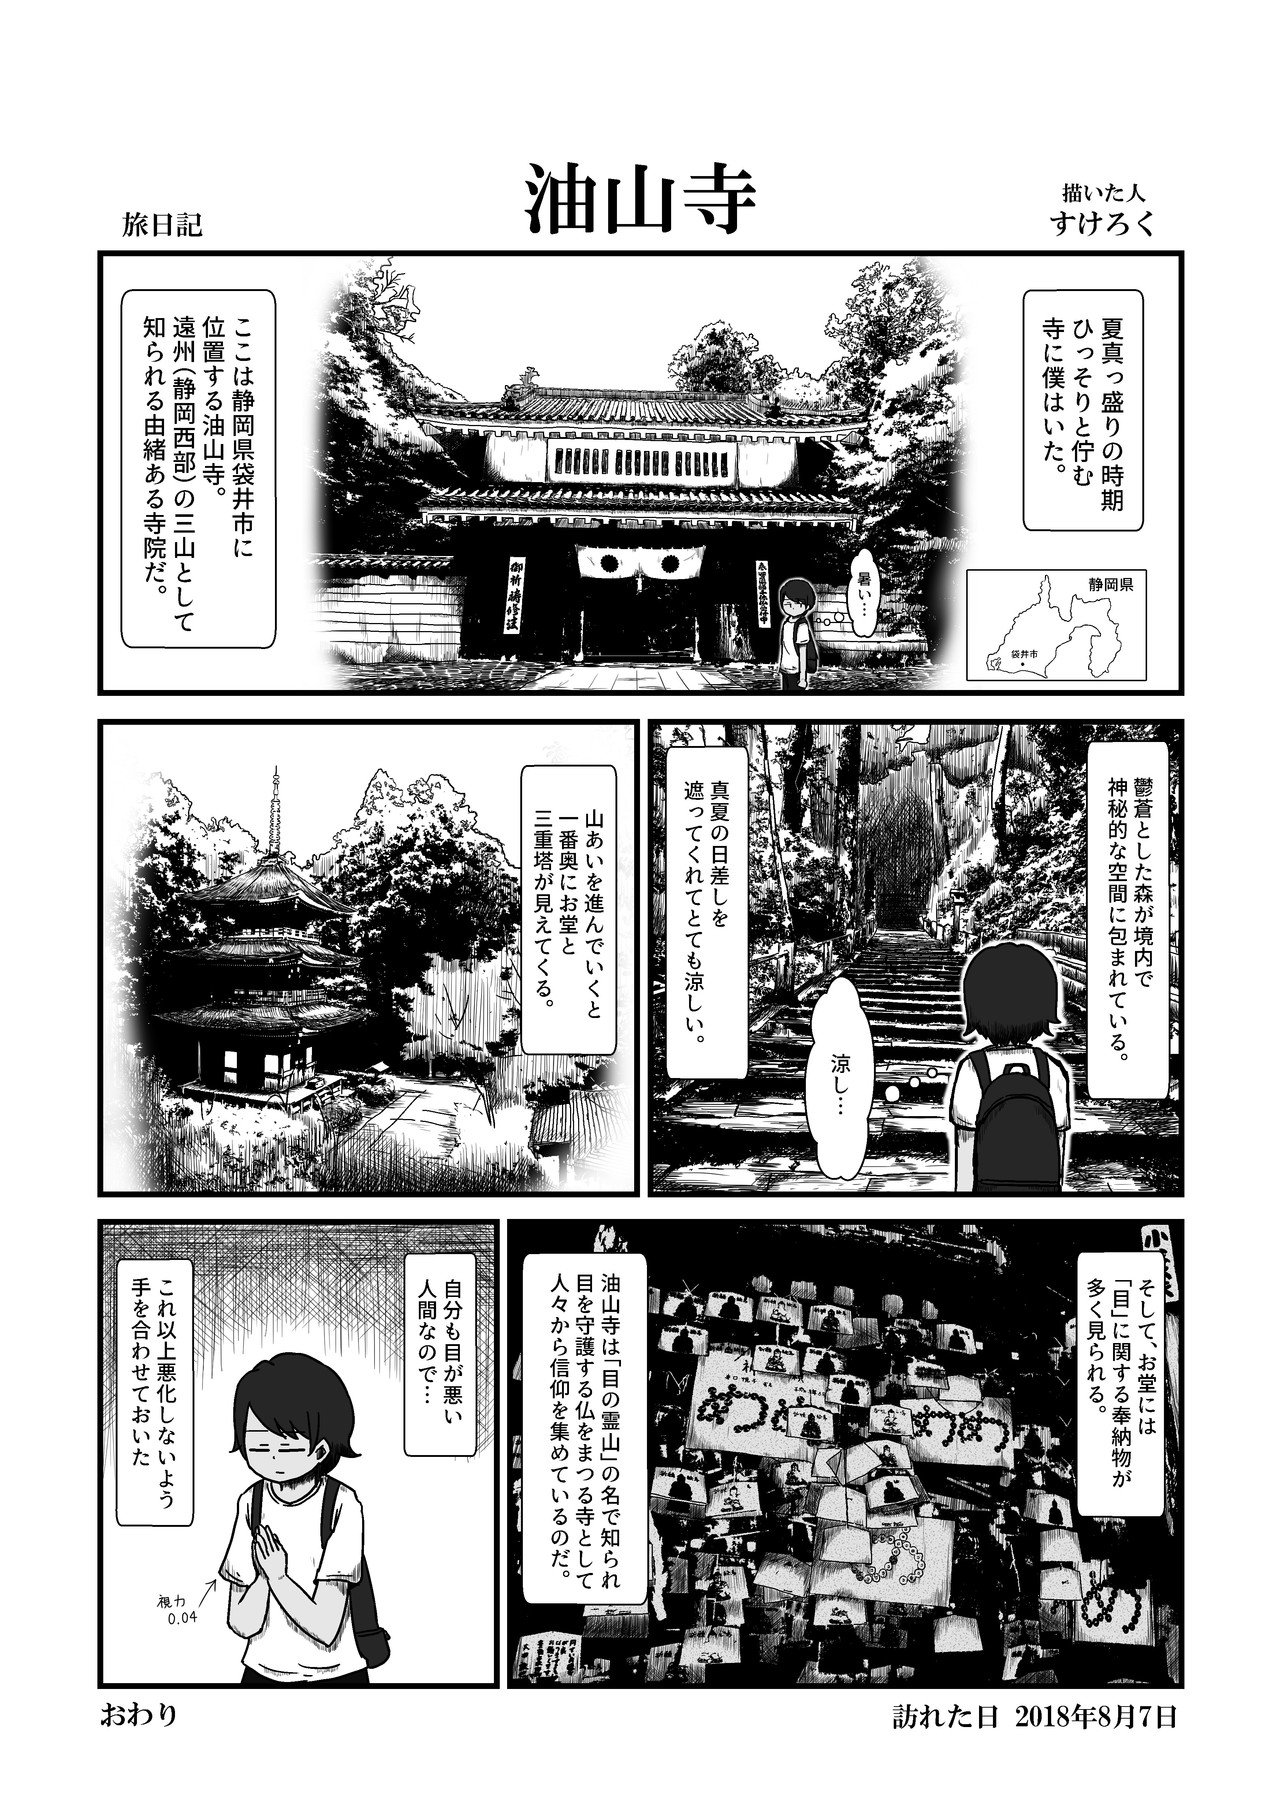 2019.5.4_旅漫画_袋井